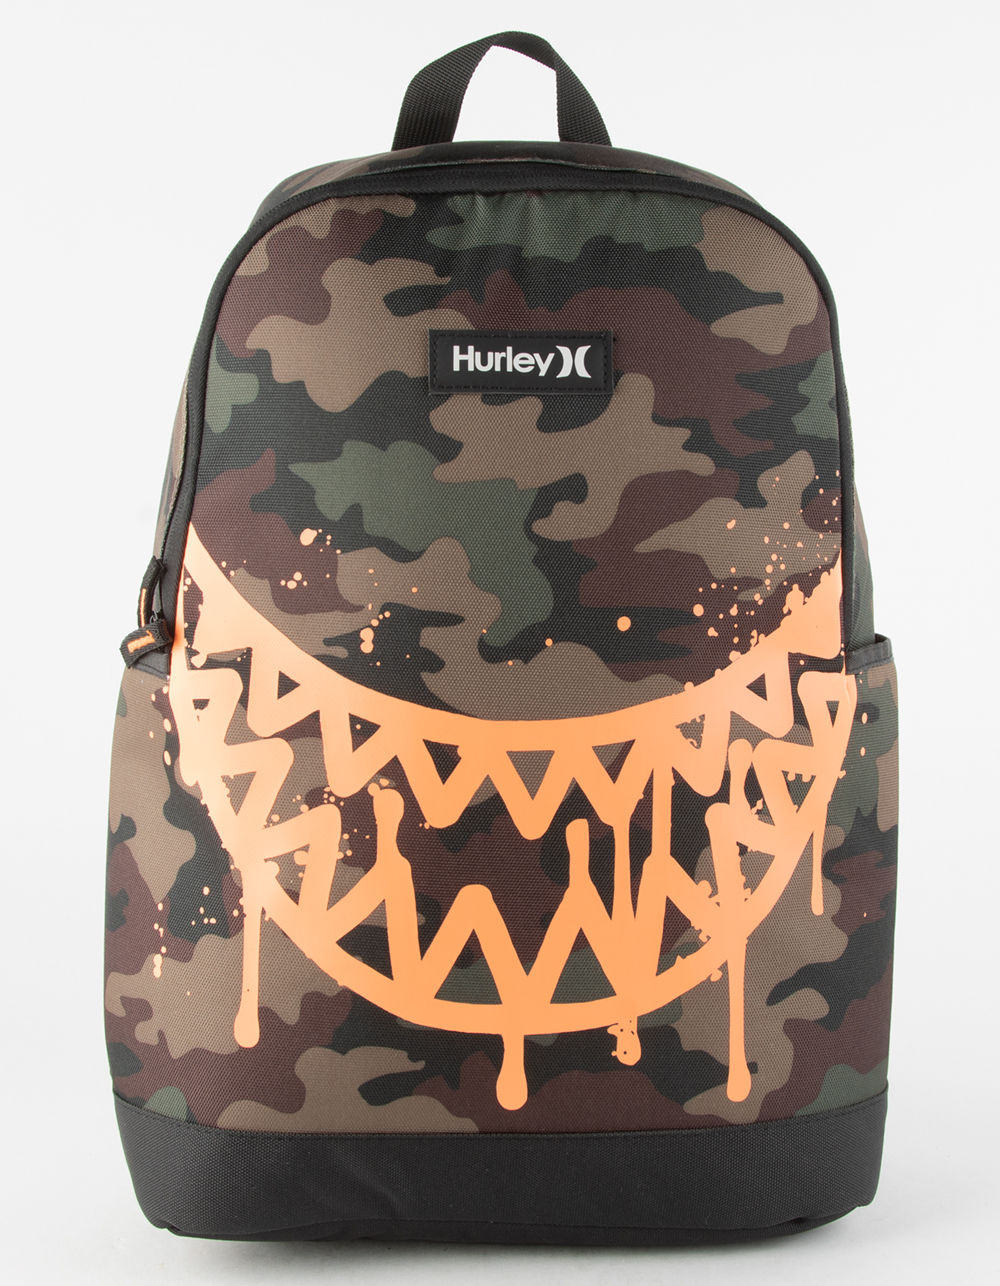 HURLEY Shark Bite Backpack - GRAY COMBO, Tillys